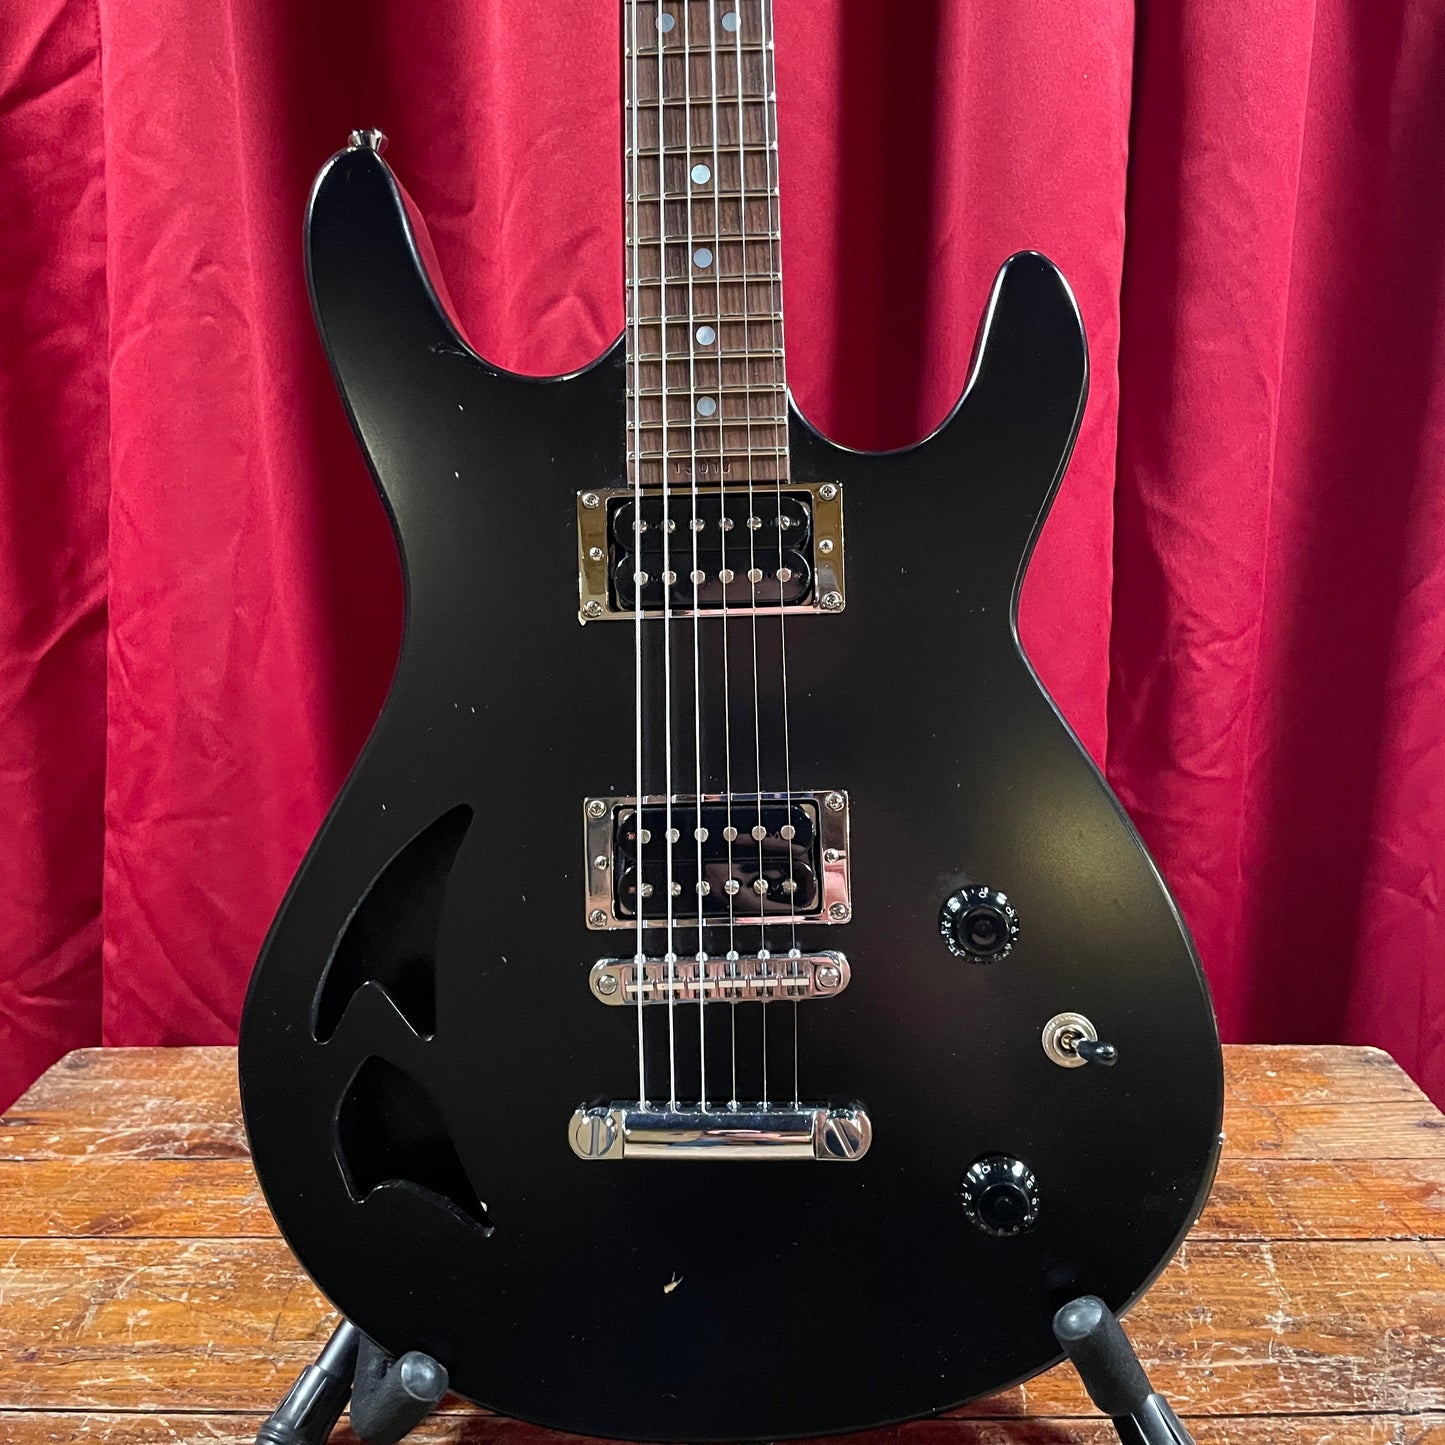 Kurt Wilson Semi Hollow Arrowhead Flat Black Guitar